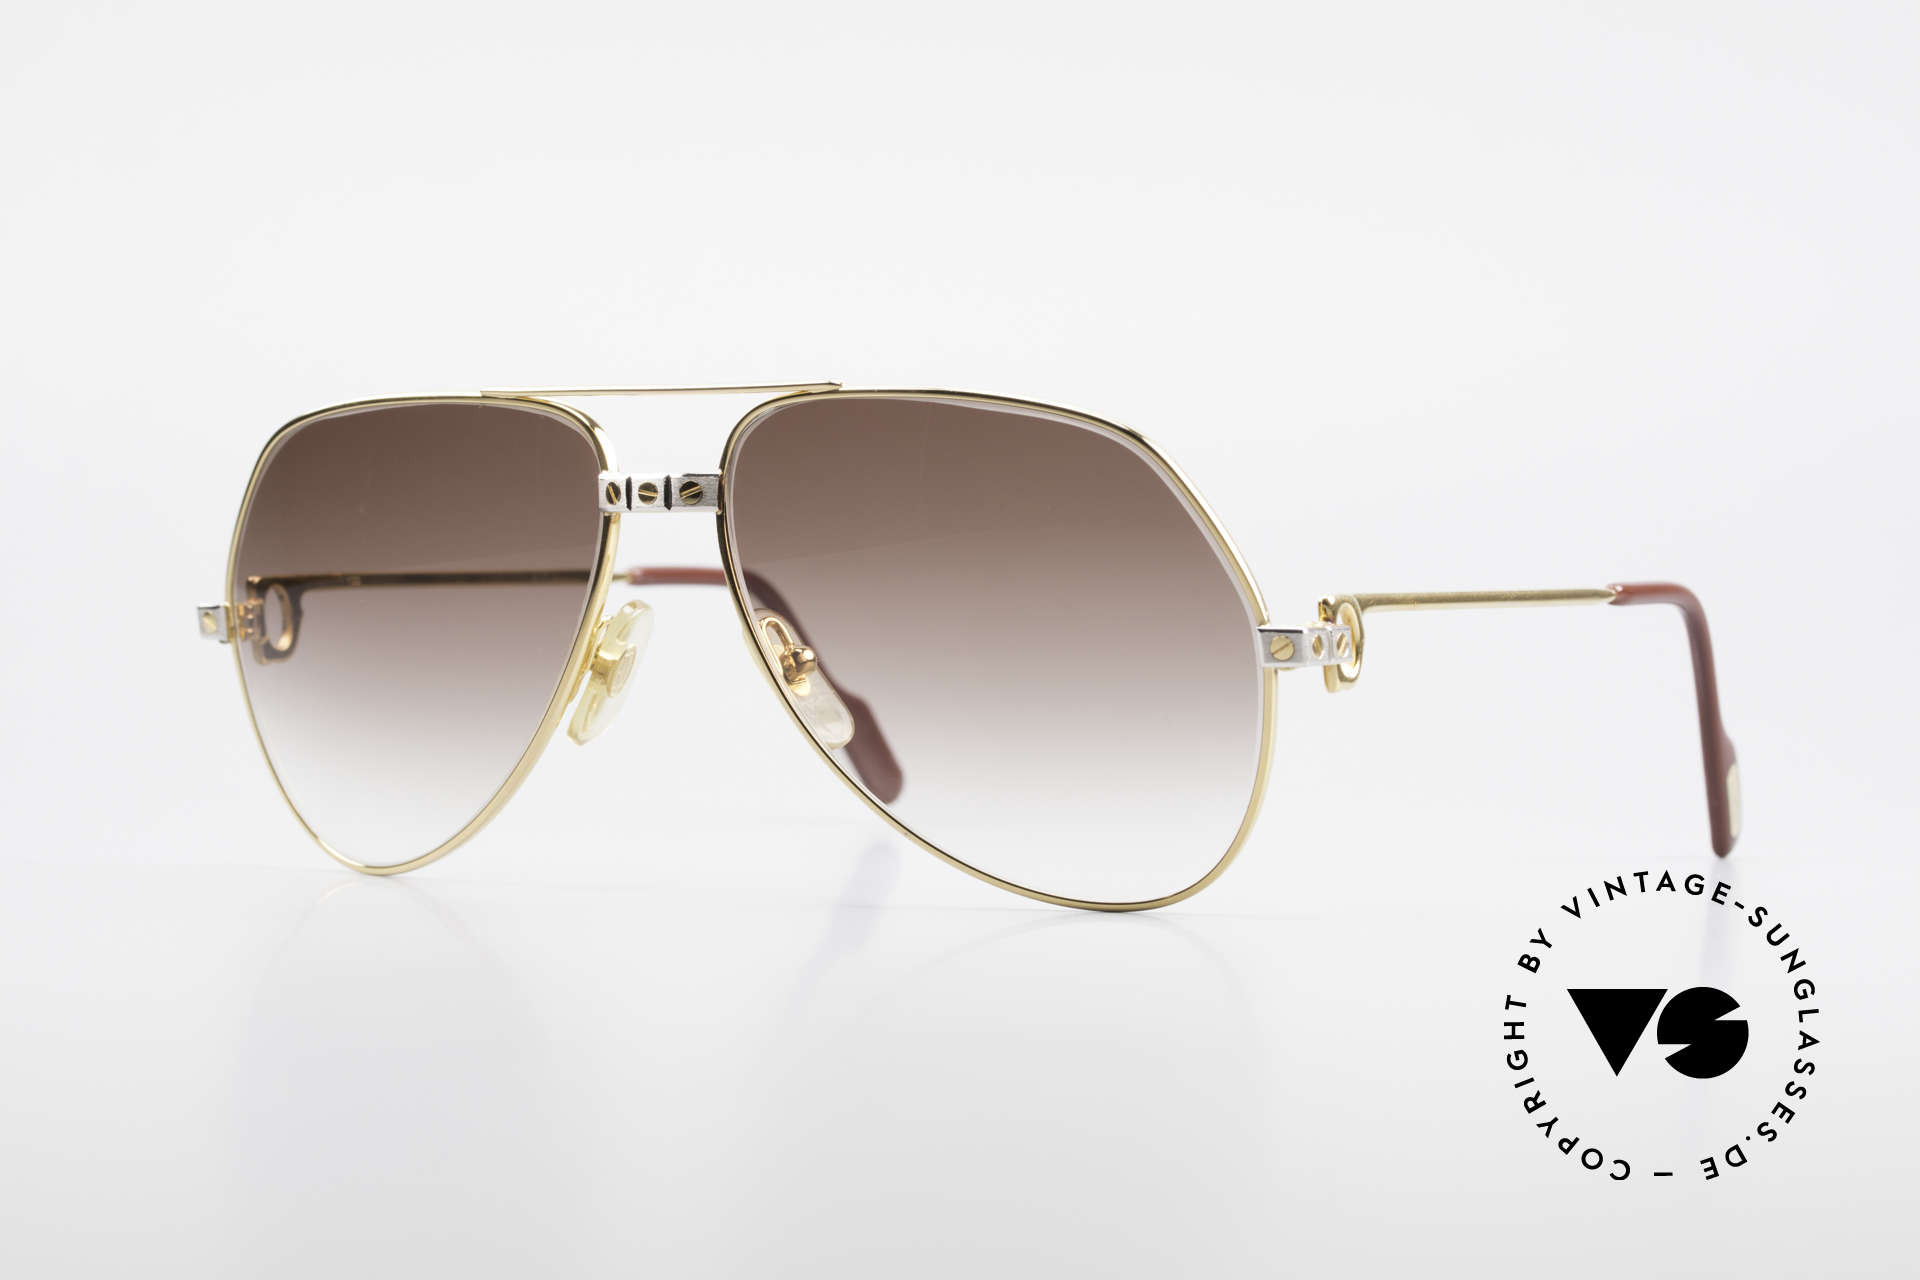 Sunglasses Cartier Vendome Santos - M 